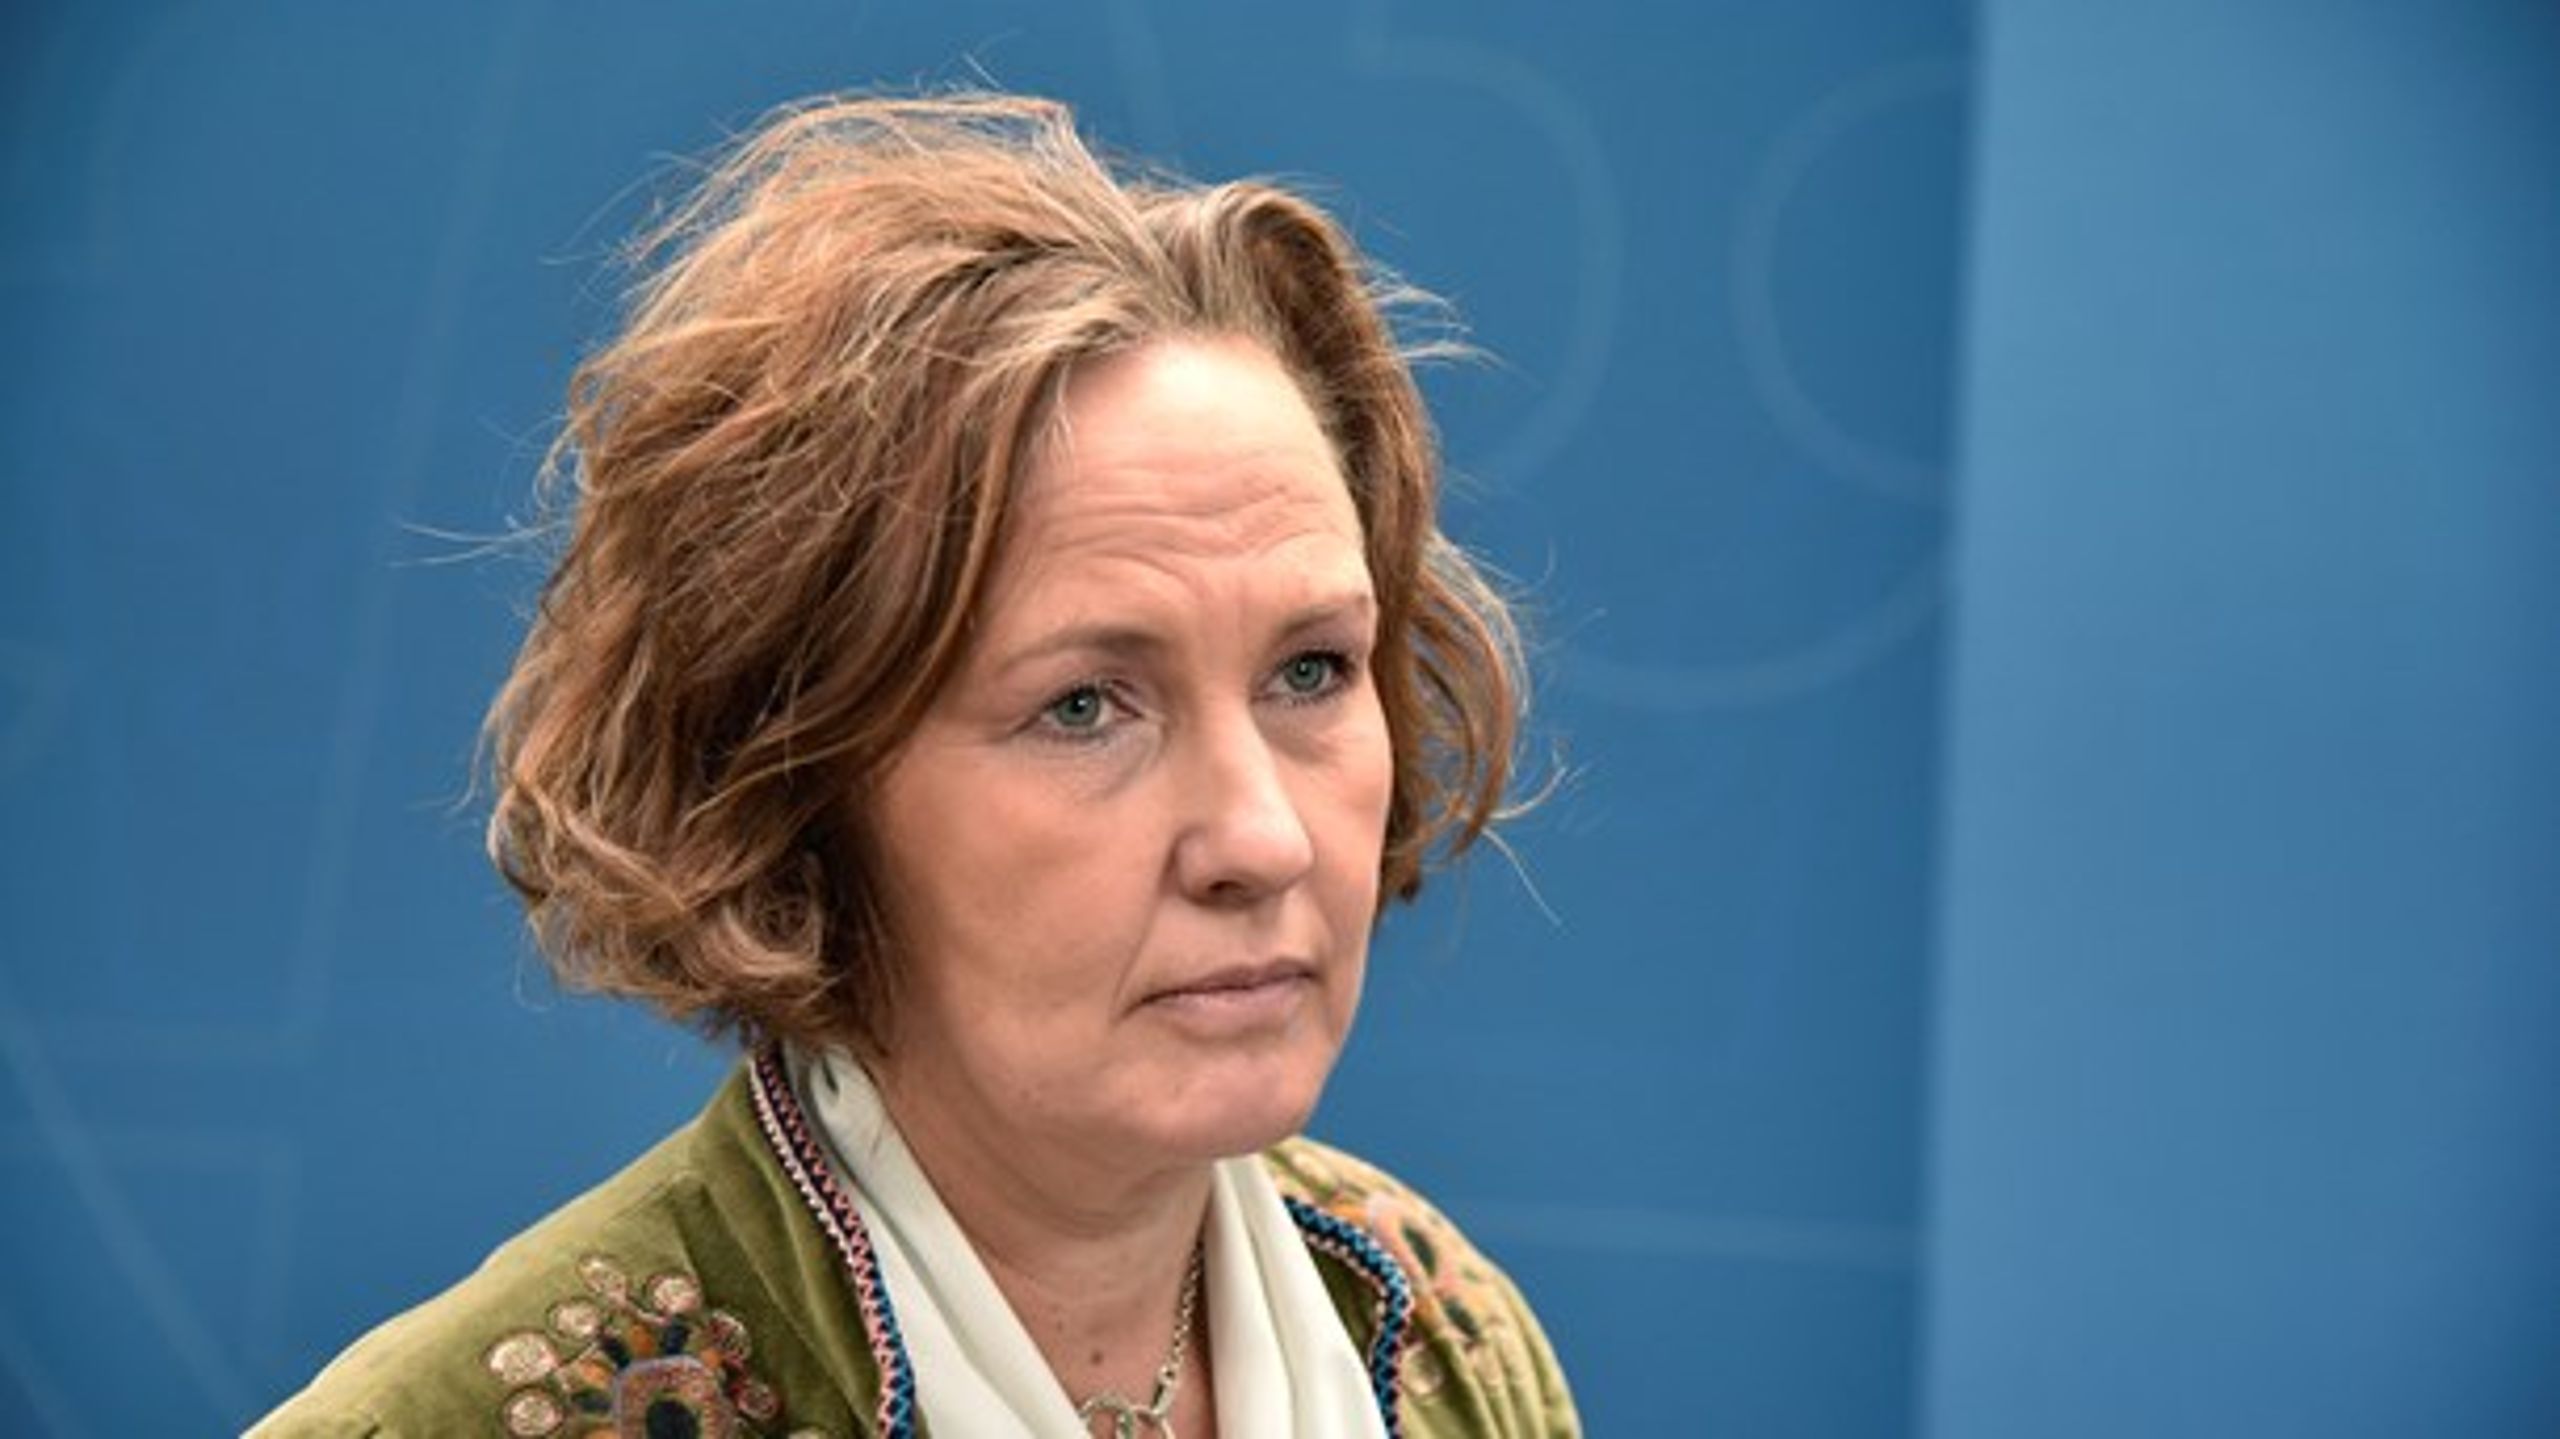 "Det är klart att det är trist", säger Liberalernas partisekreterare Juno Blom till Altinget.